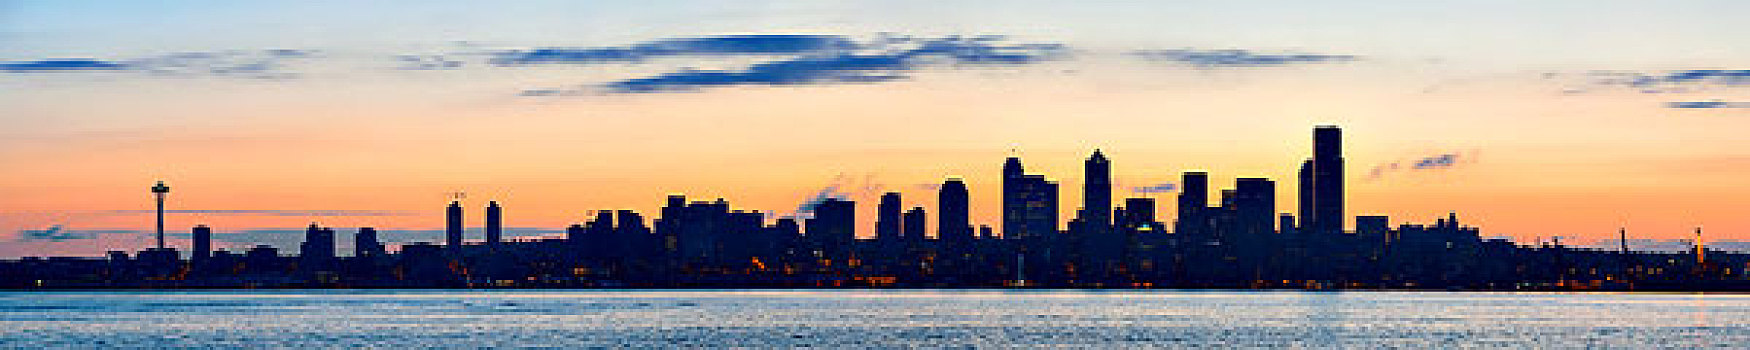 西雅图,日出,天际线,剪影,风景,城市,写字楼